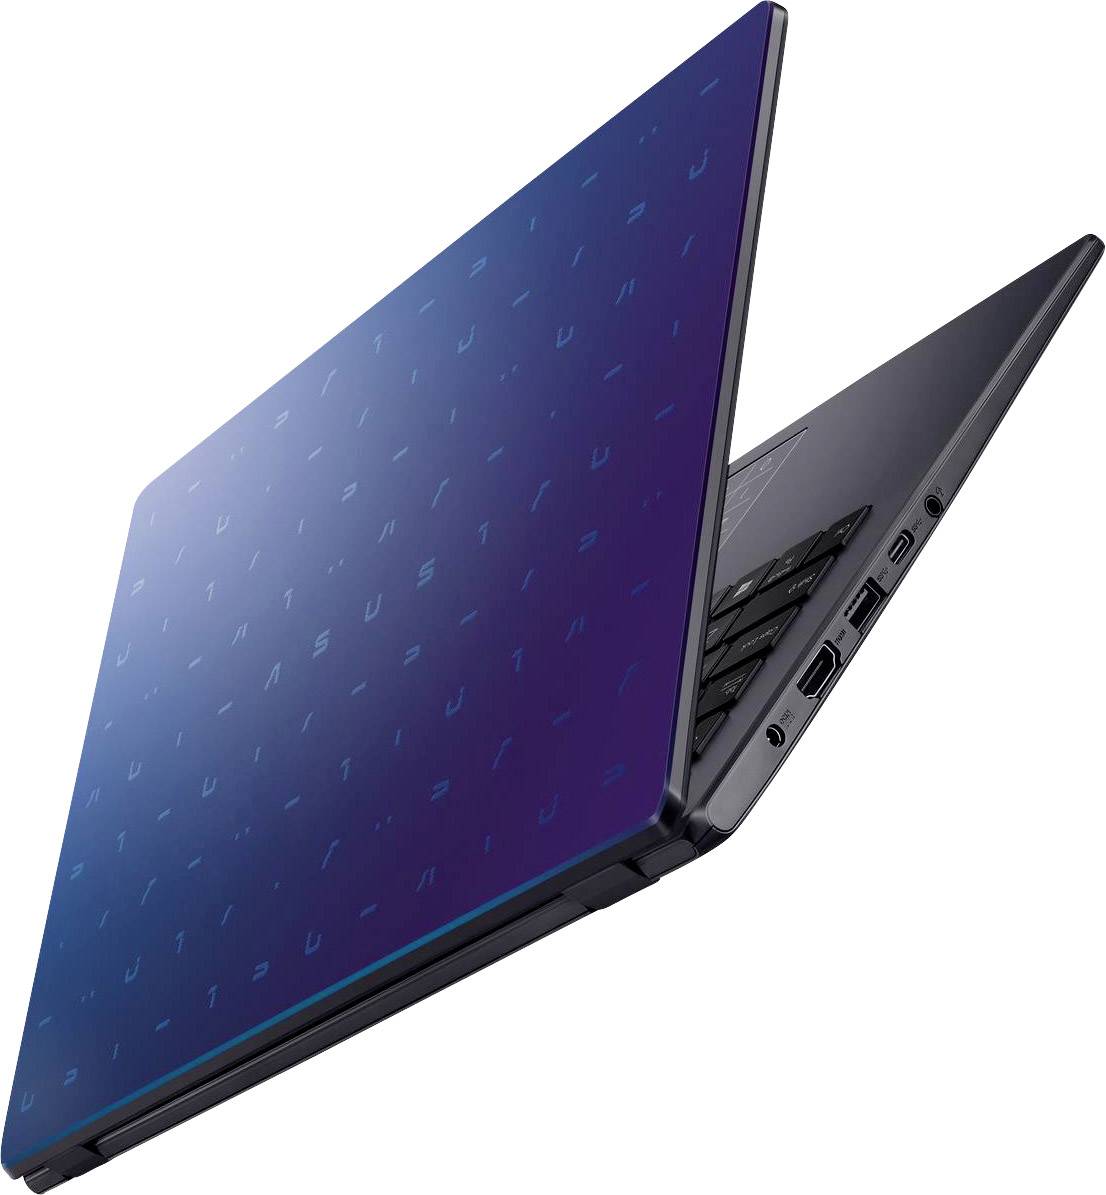 Laptop Asus Vivobook E410ma Duta Teknologi 3608